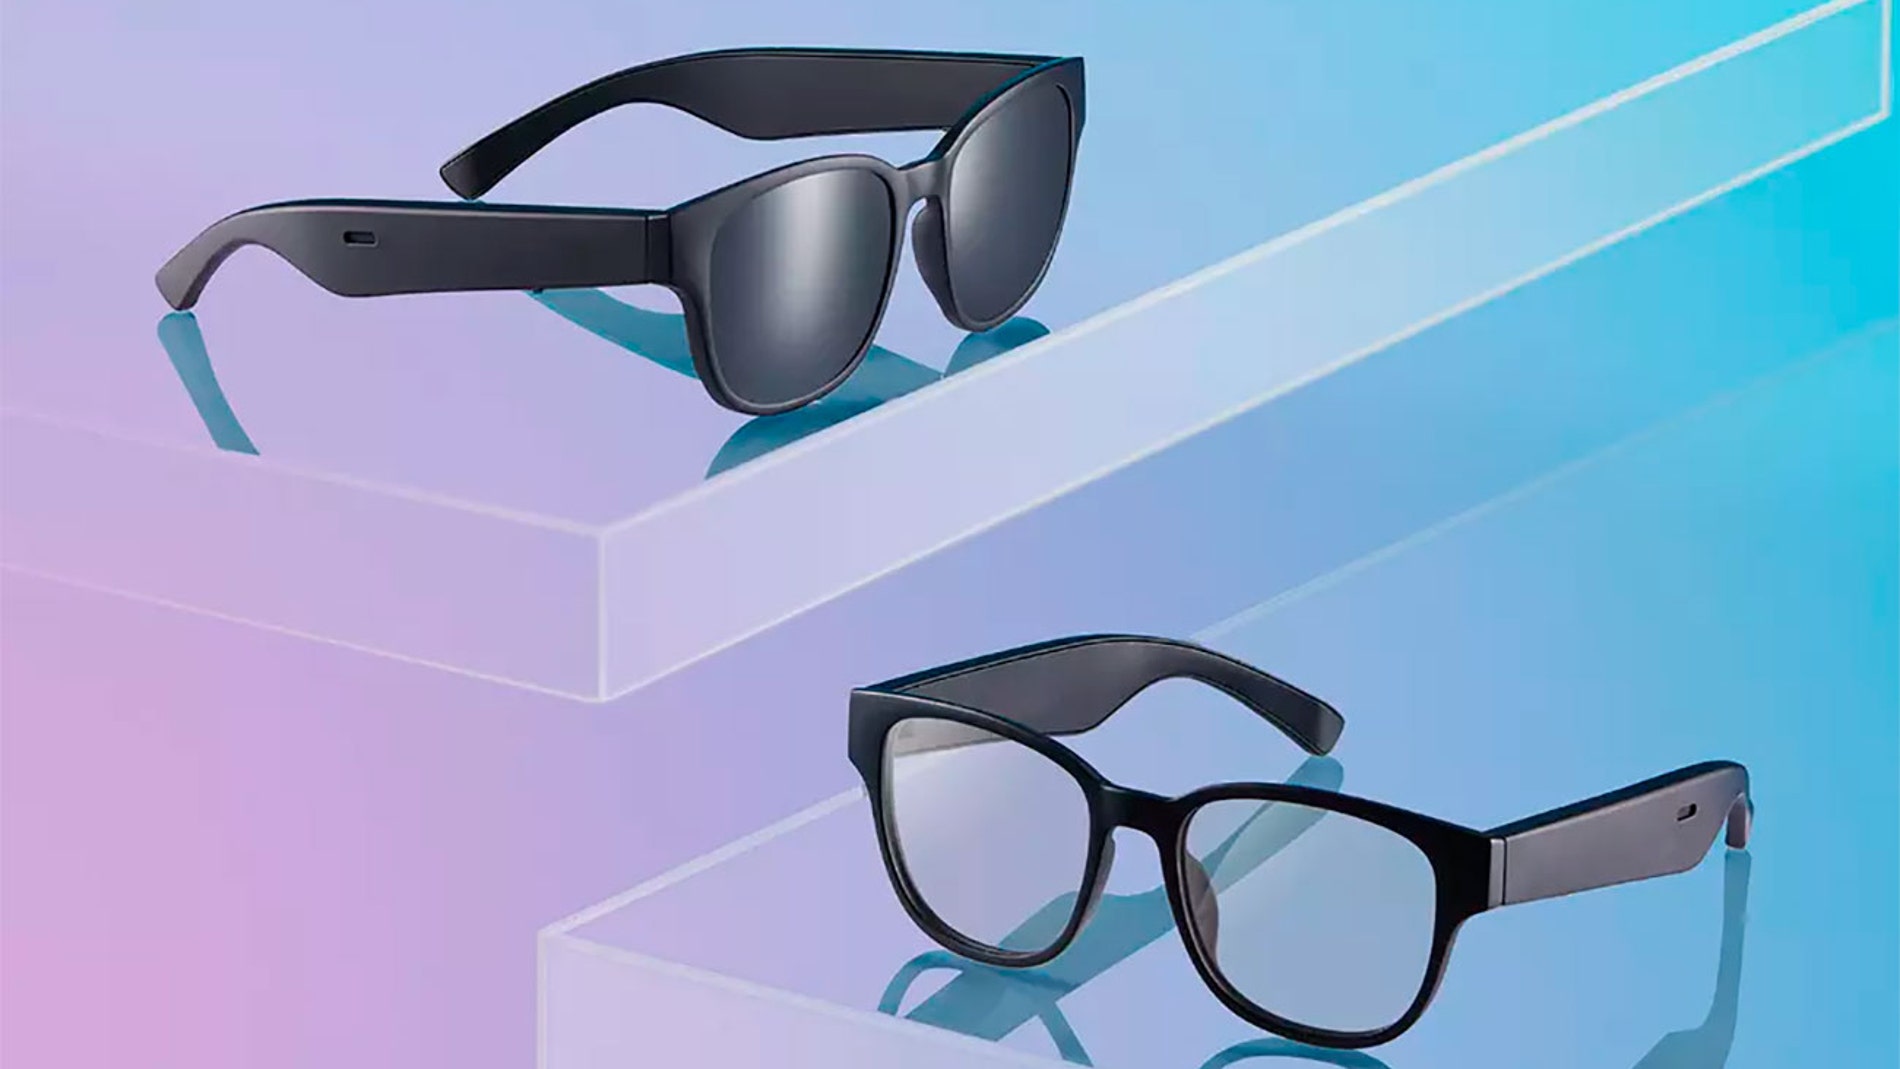 ahora vende estas gafas inteligentes con Bluetooth inteligencia artificial